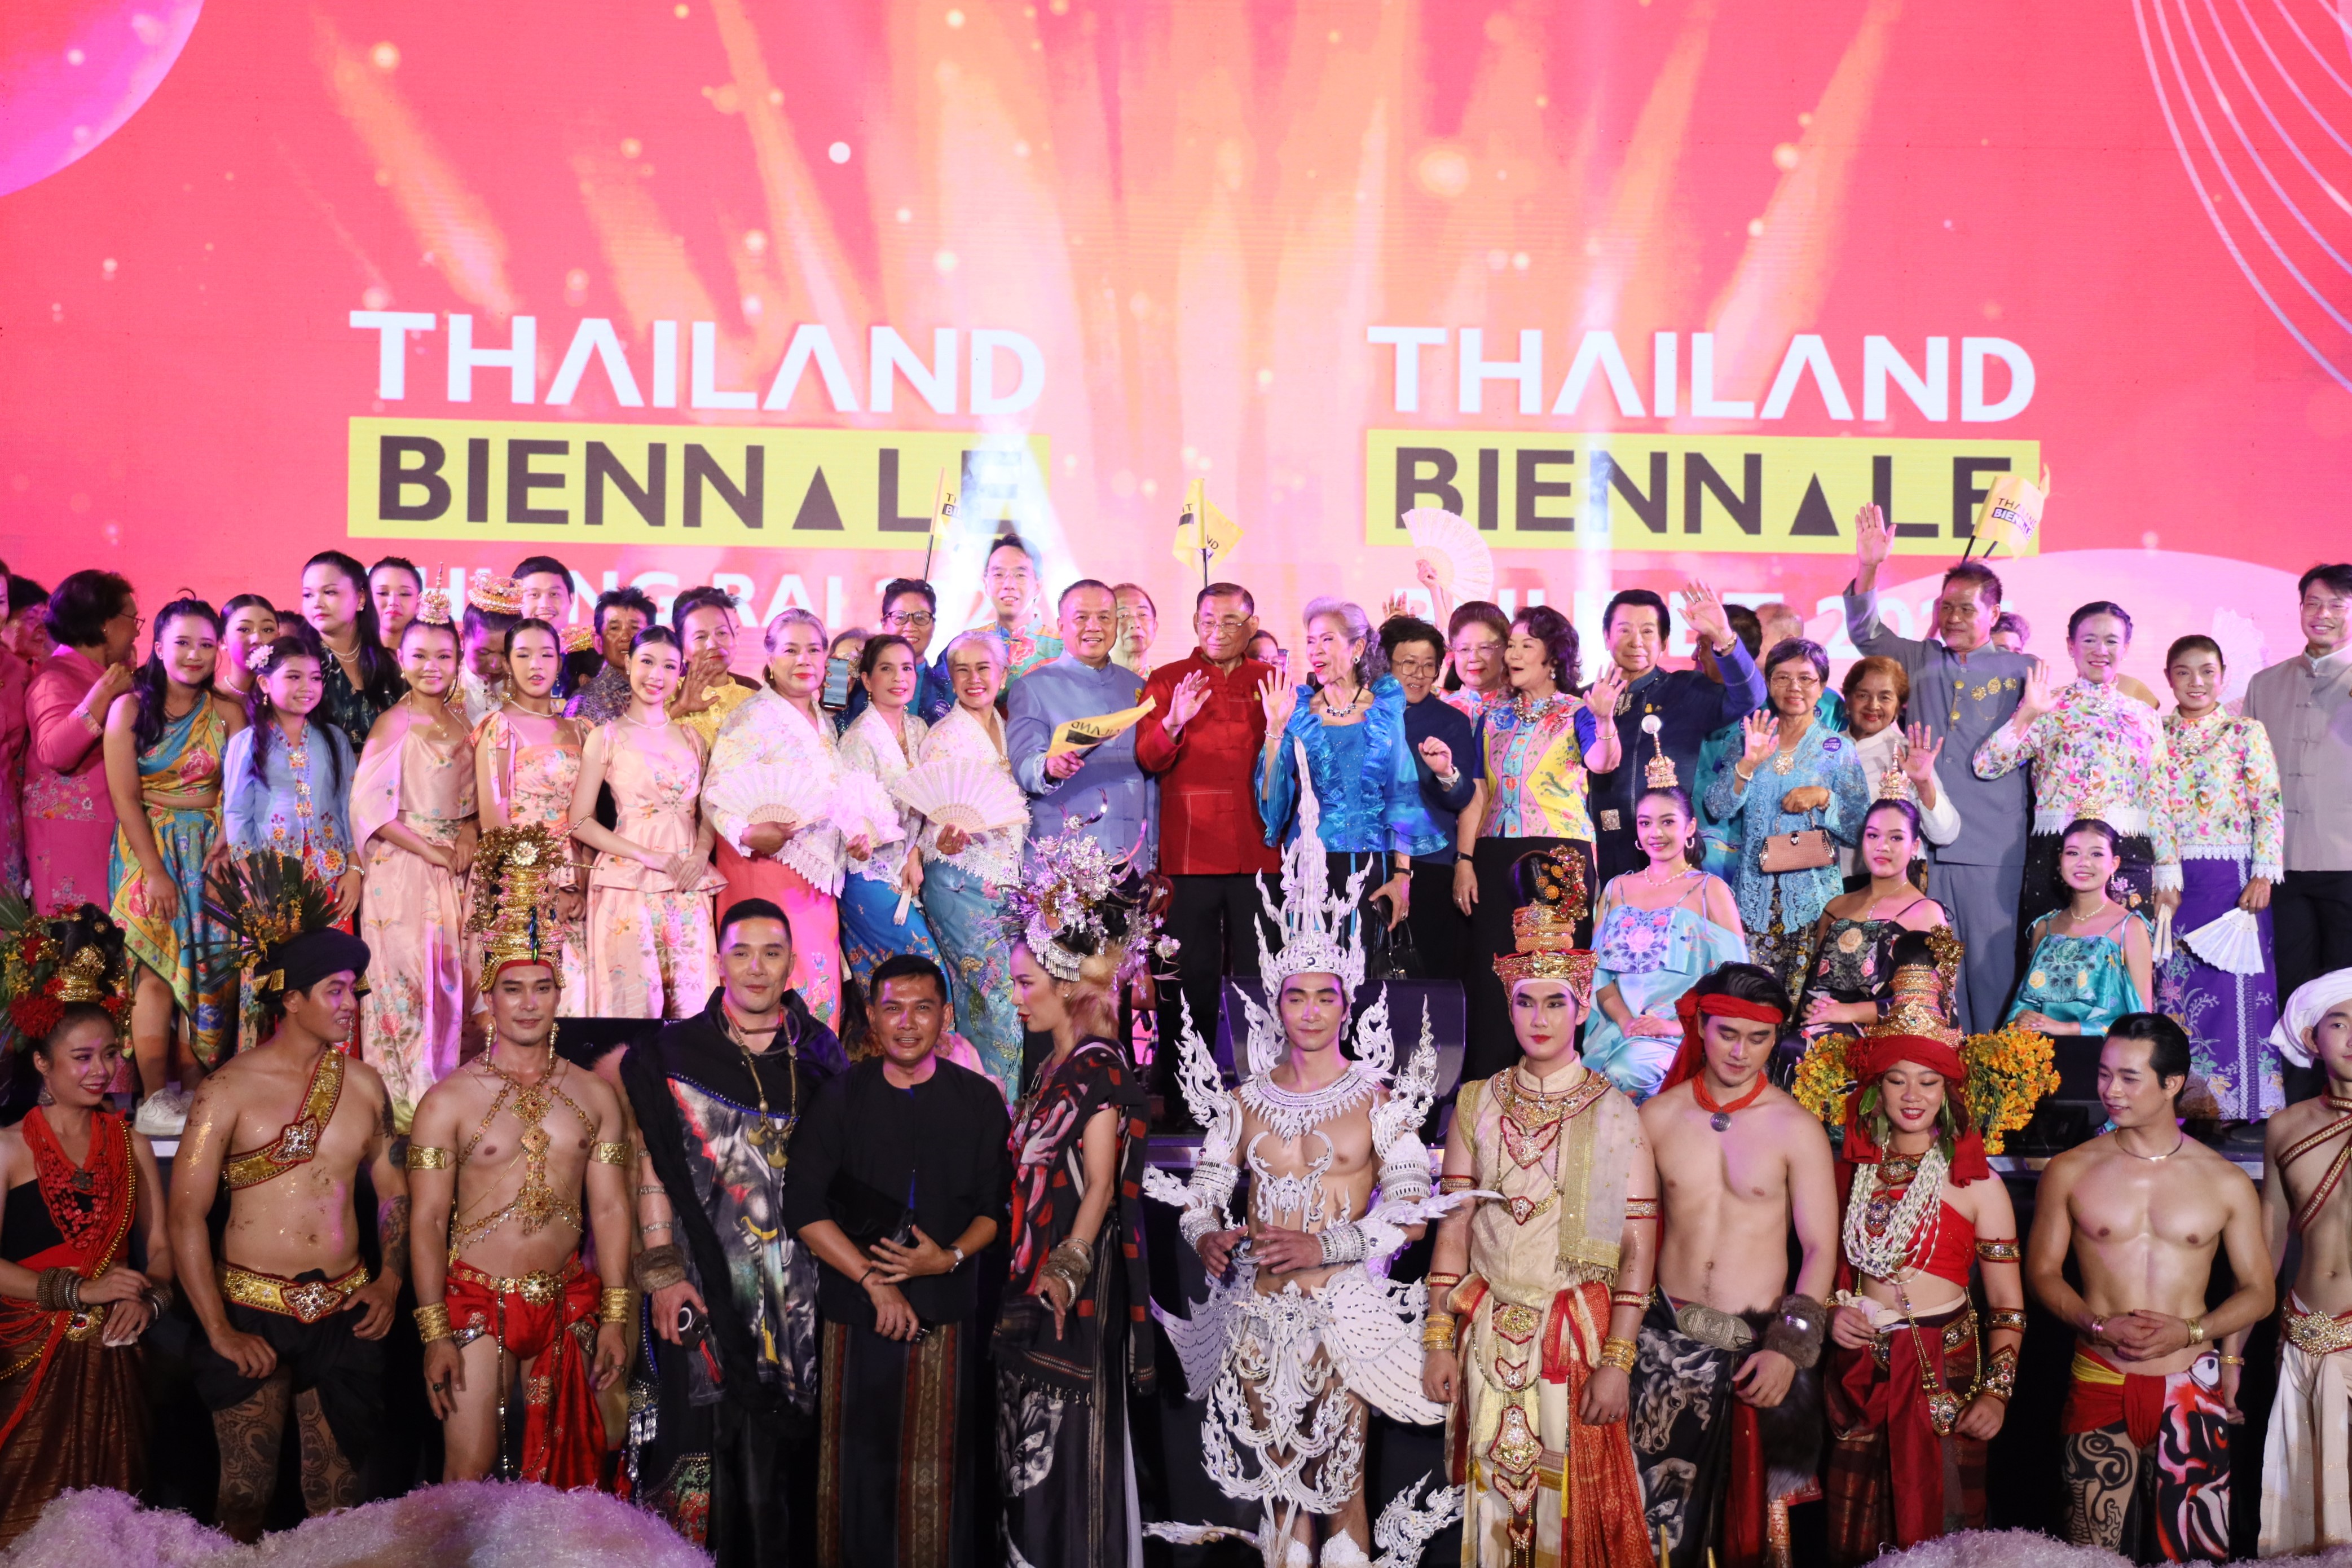 รมว.กระทรวงวัฒนธรรม ส่งมอบธงสัญลักษณ์ให้ จ.ภูเก็ต เจ้าภาพจัดงานมหกรรมศิลปะร่วมสมัยนานาชาติ "Thailand Biennale 2025" พร้อมฉลองความสำเร็จของ “Thailand Biennale, Chiang Rai 2023 สร้างรายได้กว่า 24,000 ล้านบาท